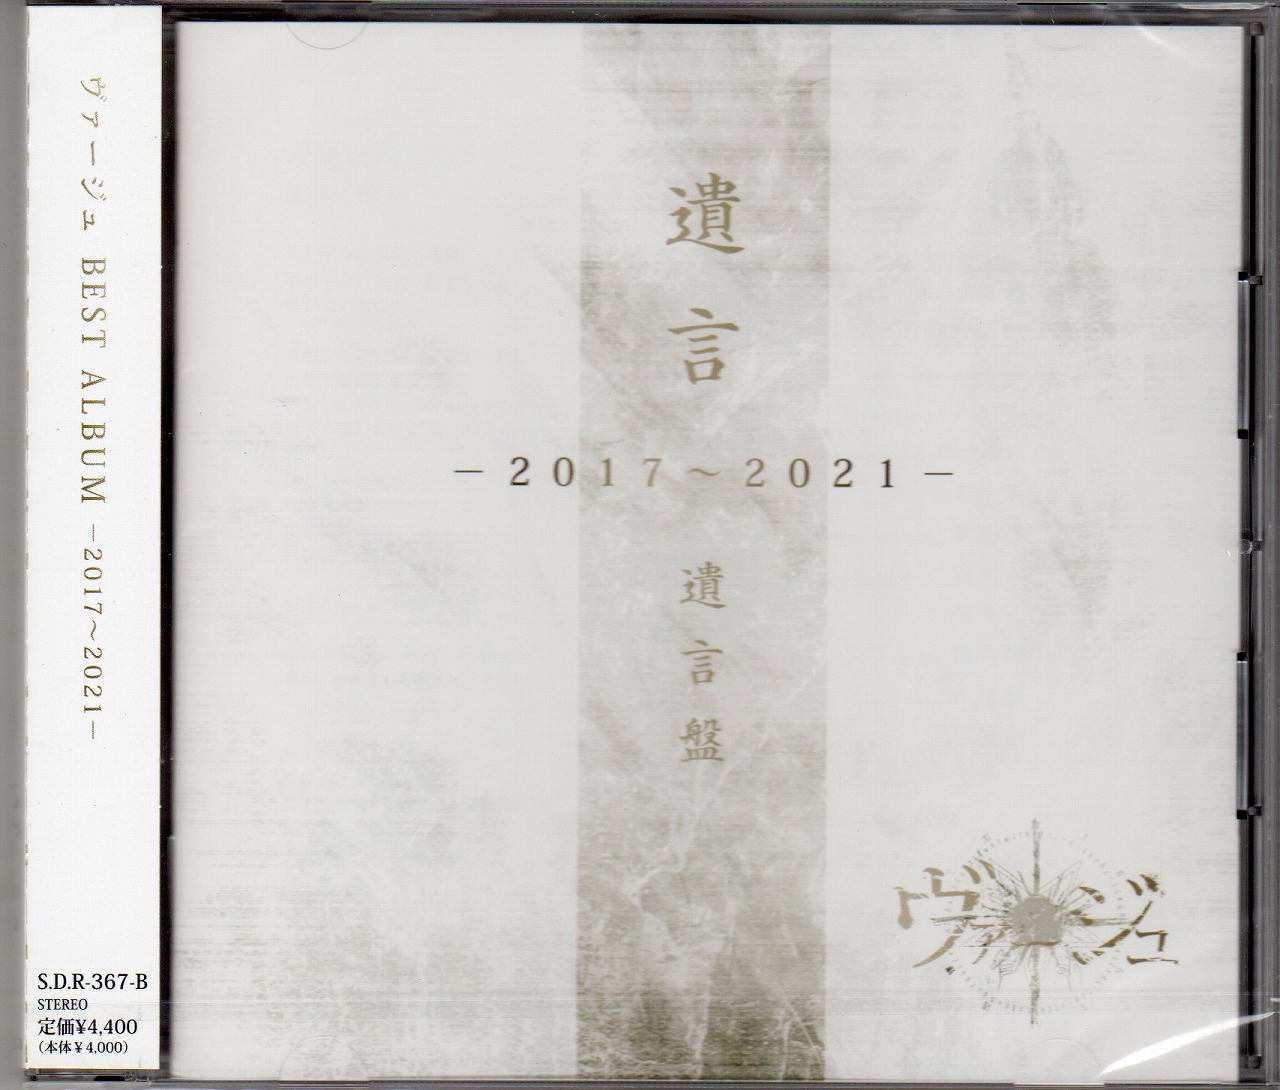 ヴァージュ ( ヴァージュ )  の CD 【-遺言盤-】「遺言」-2017〜2021-